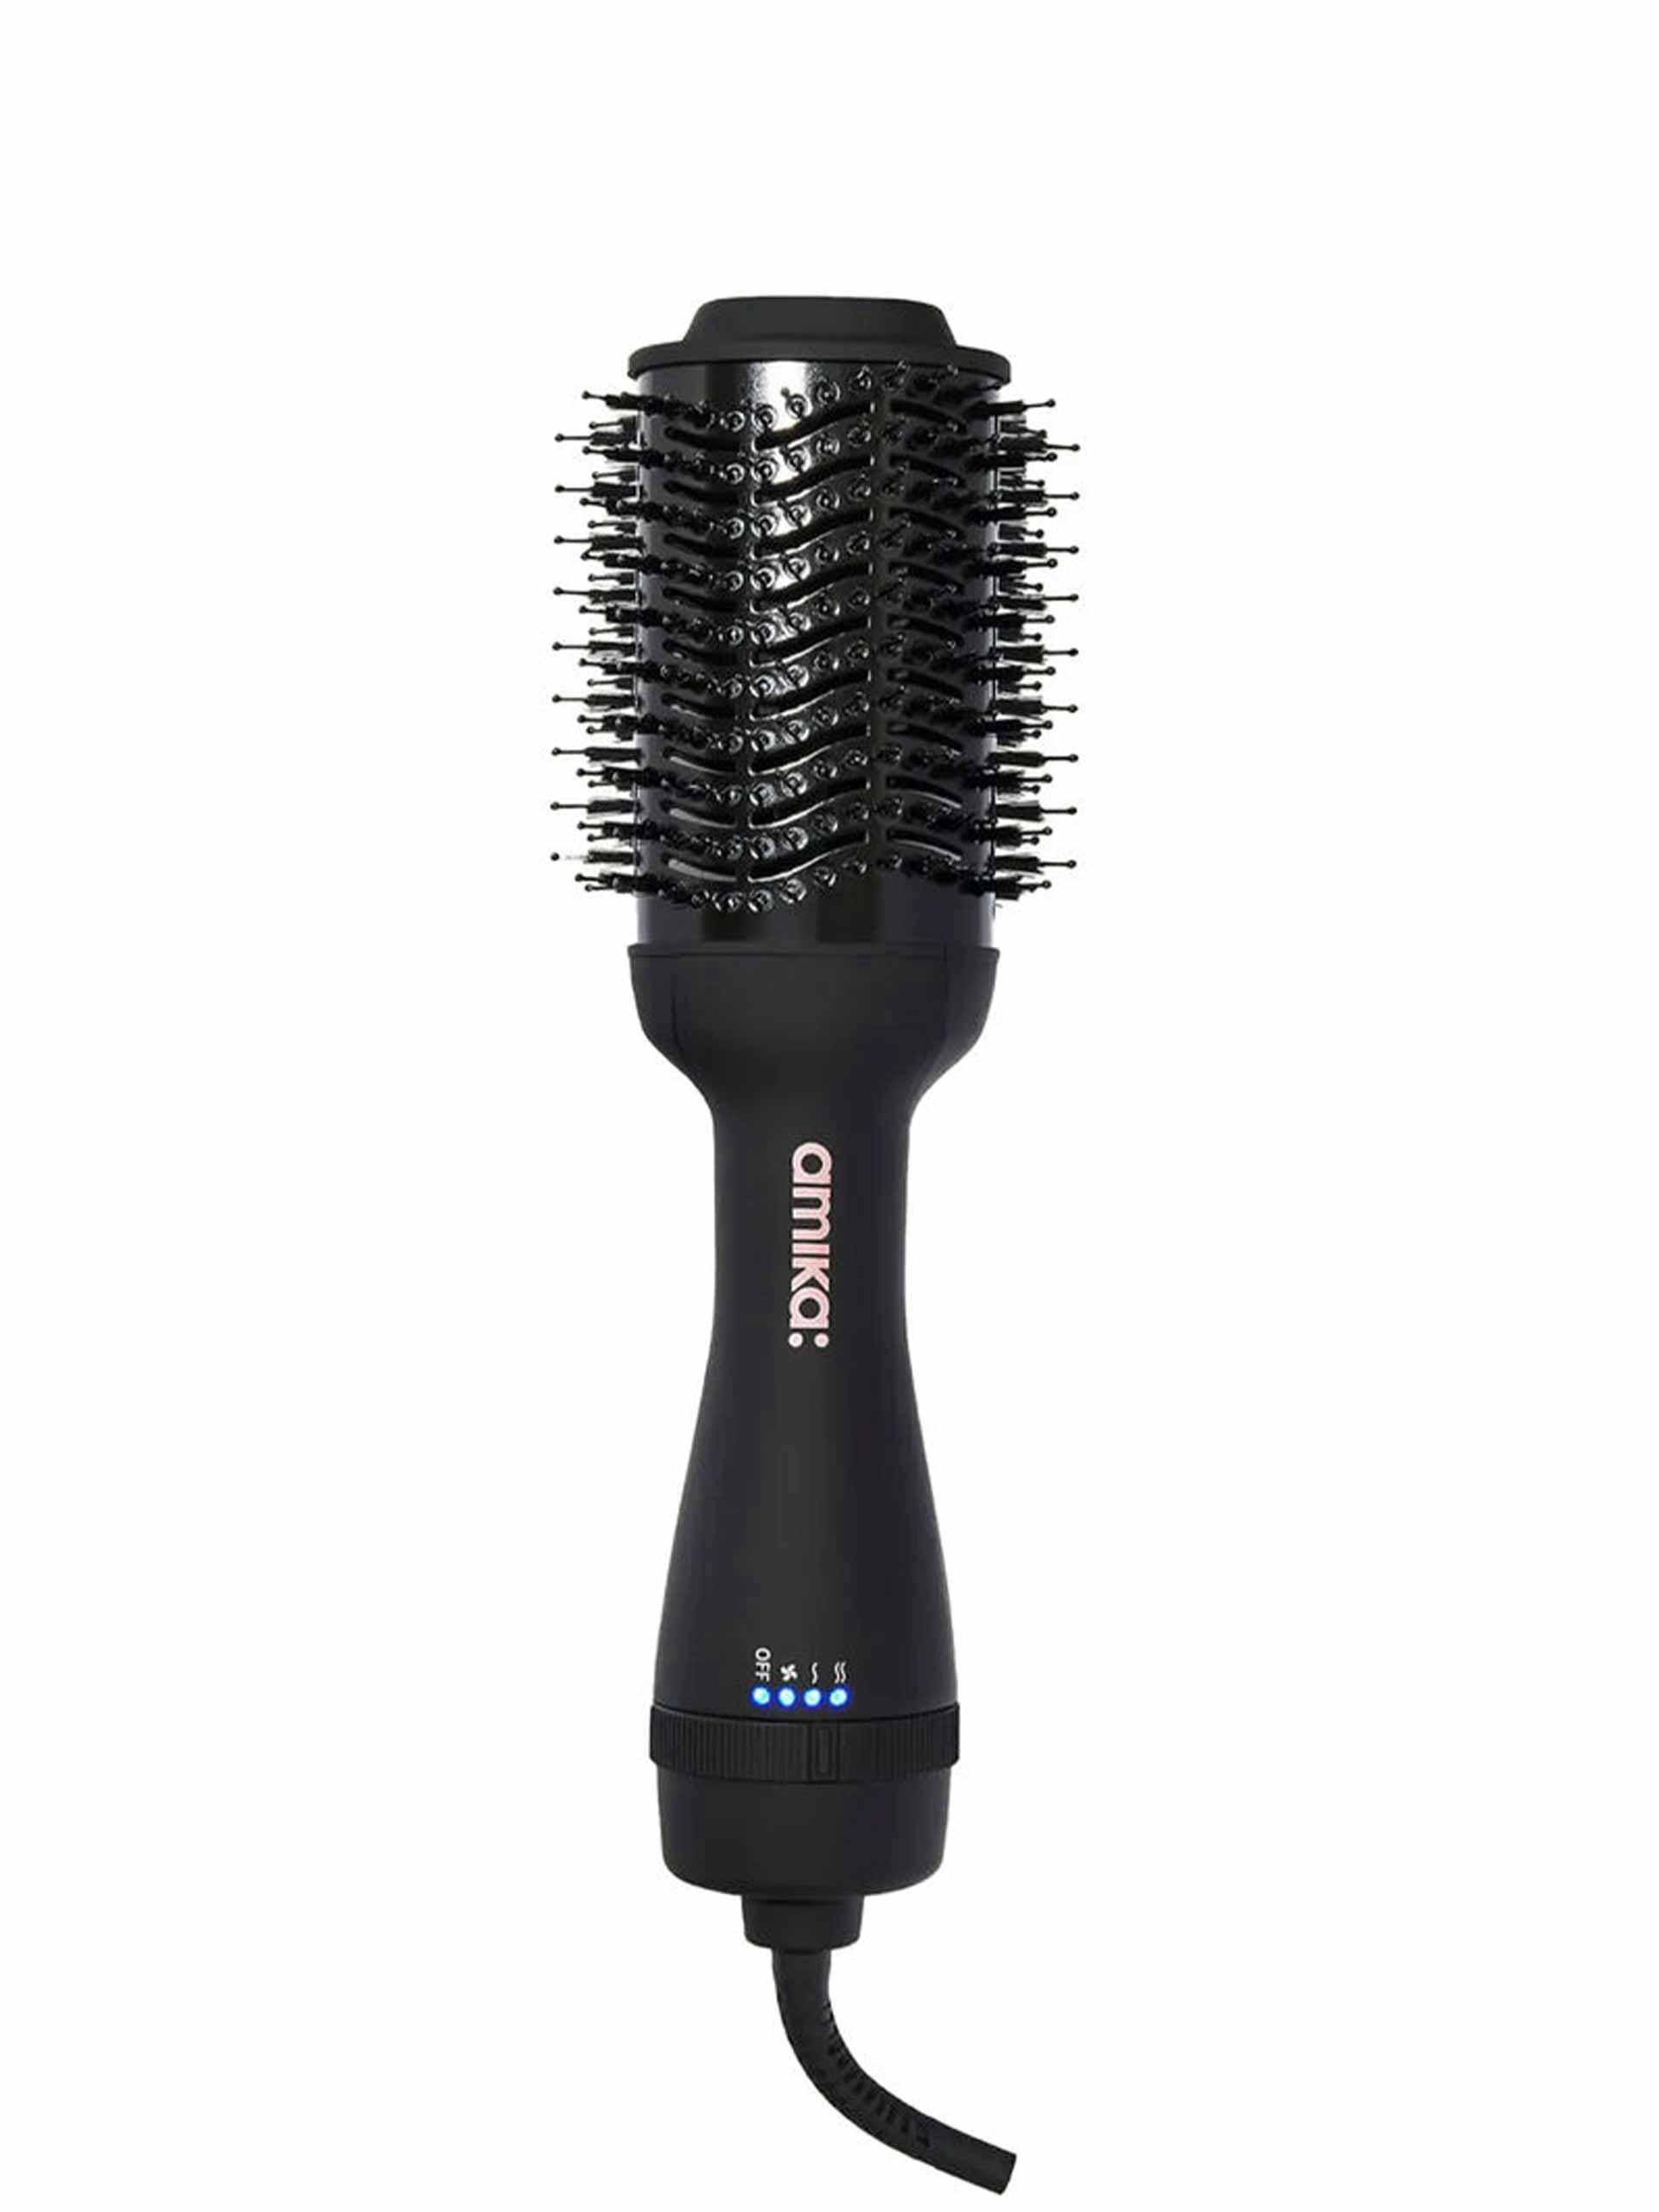 Round hair dryer brush